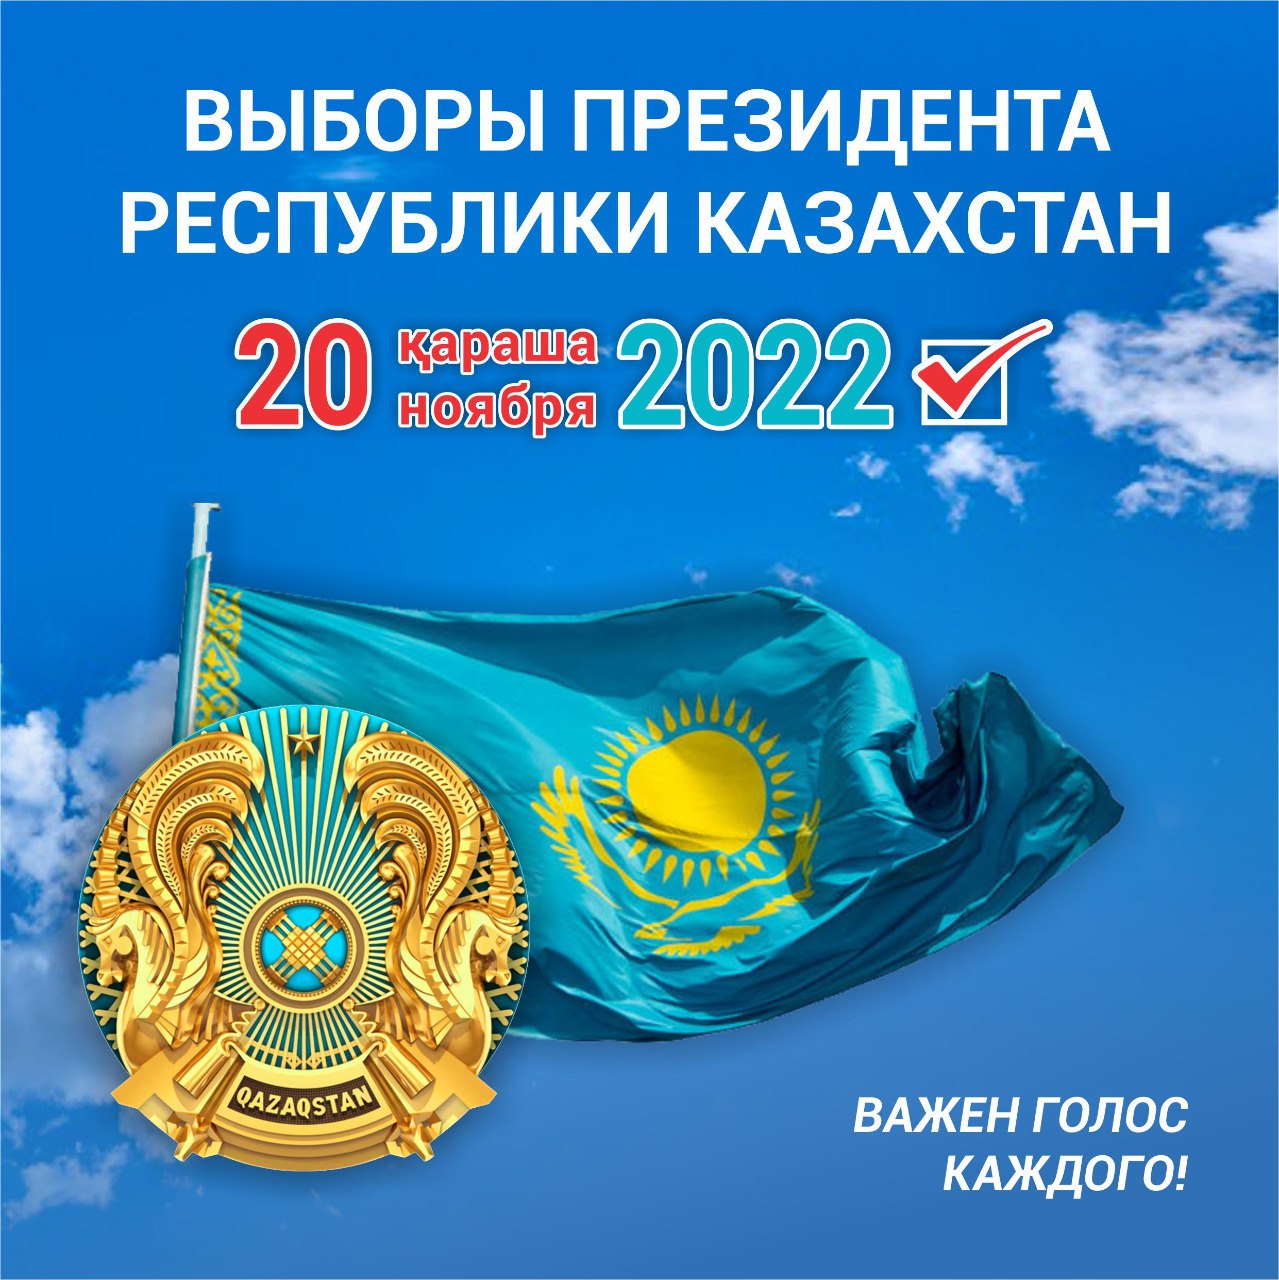 20 ноября 2022 года выборы Президента Республики Казахстан